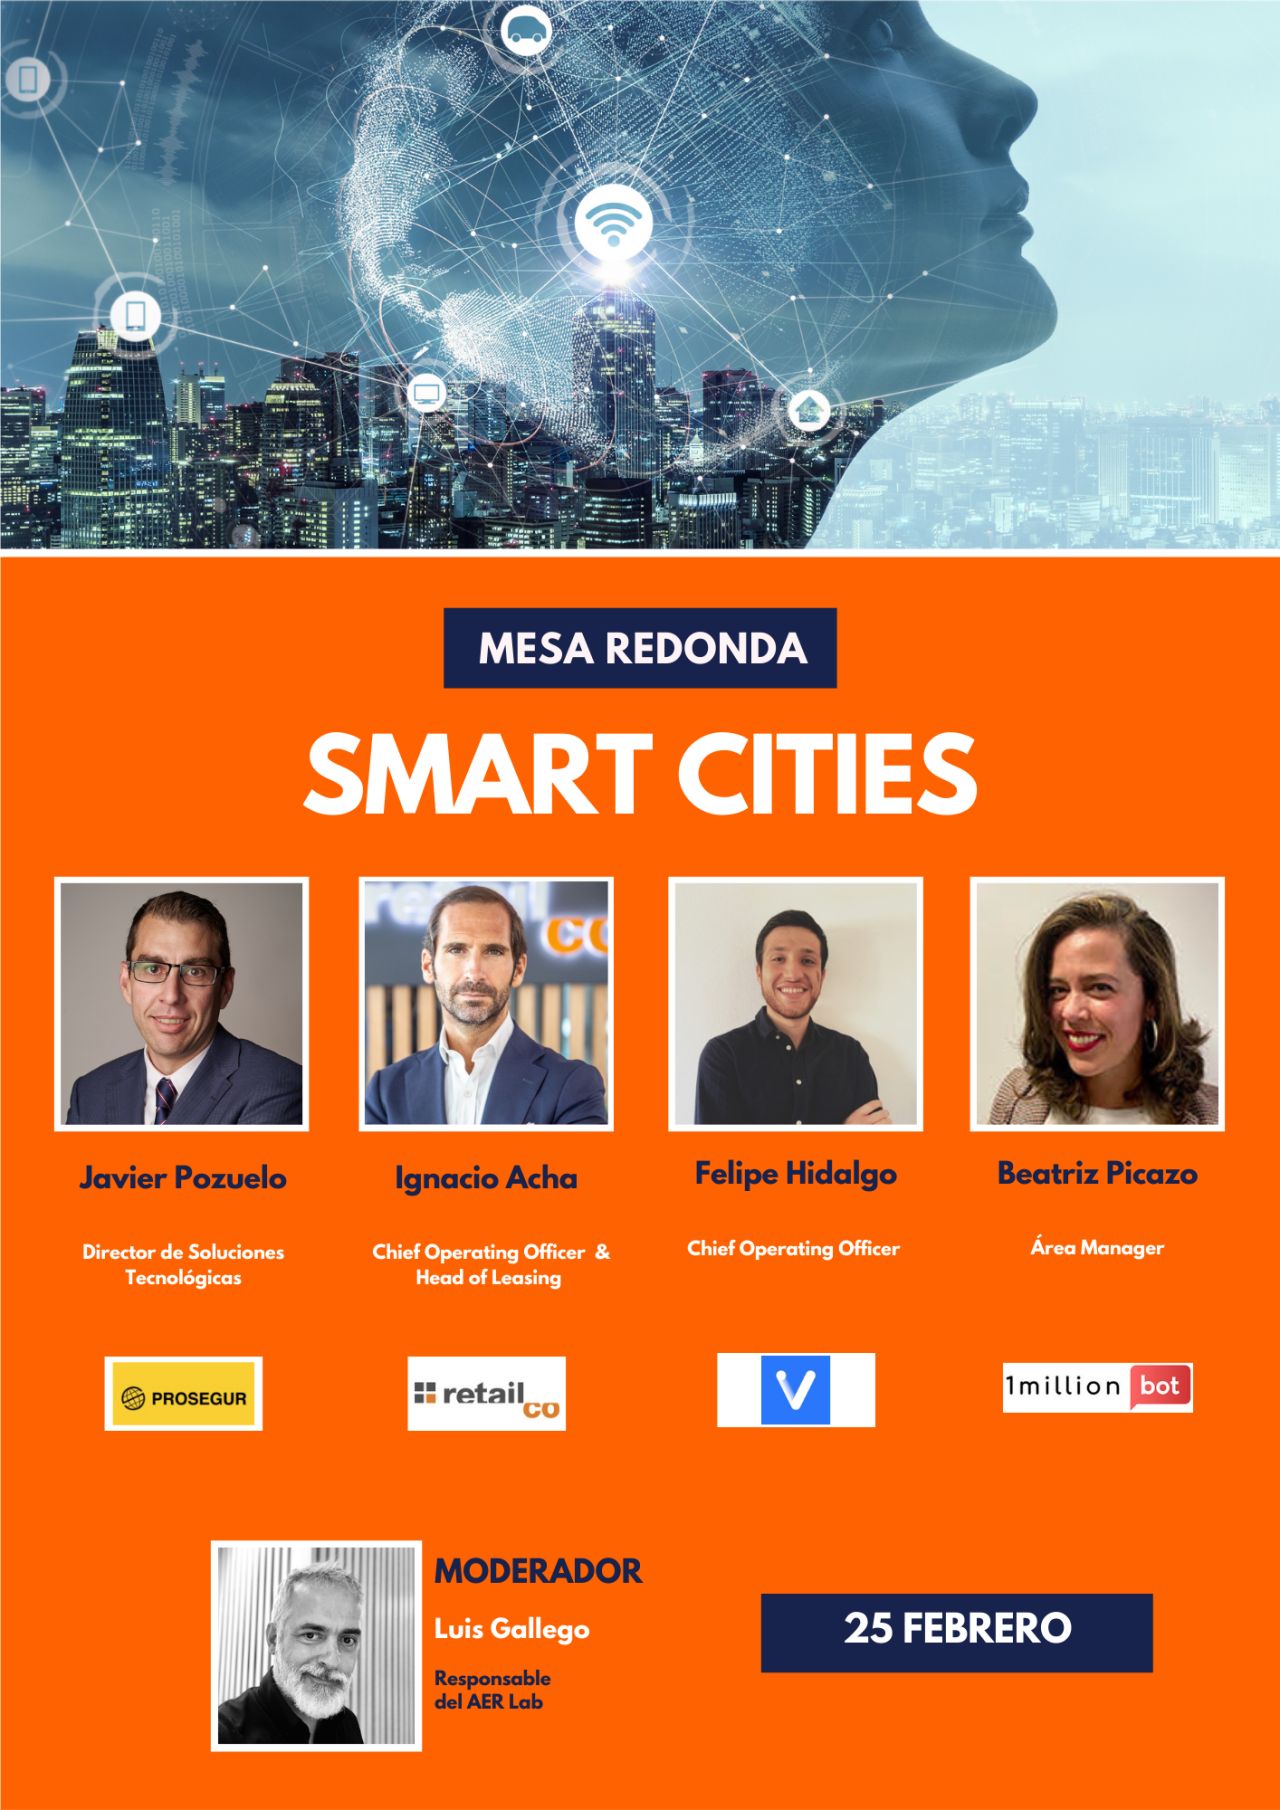 1millionbot participa en la mesa redonda sobre retail y Smart Cities organizada por la Asociación Española de Retail (AER) para el 25 de febrero